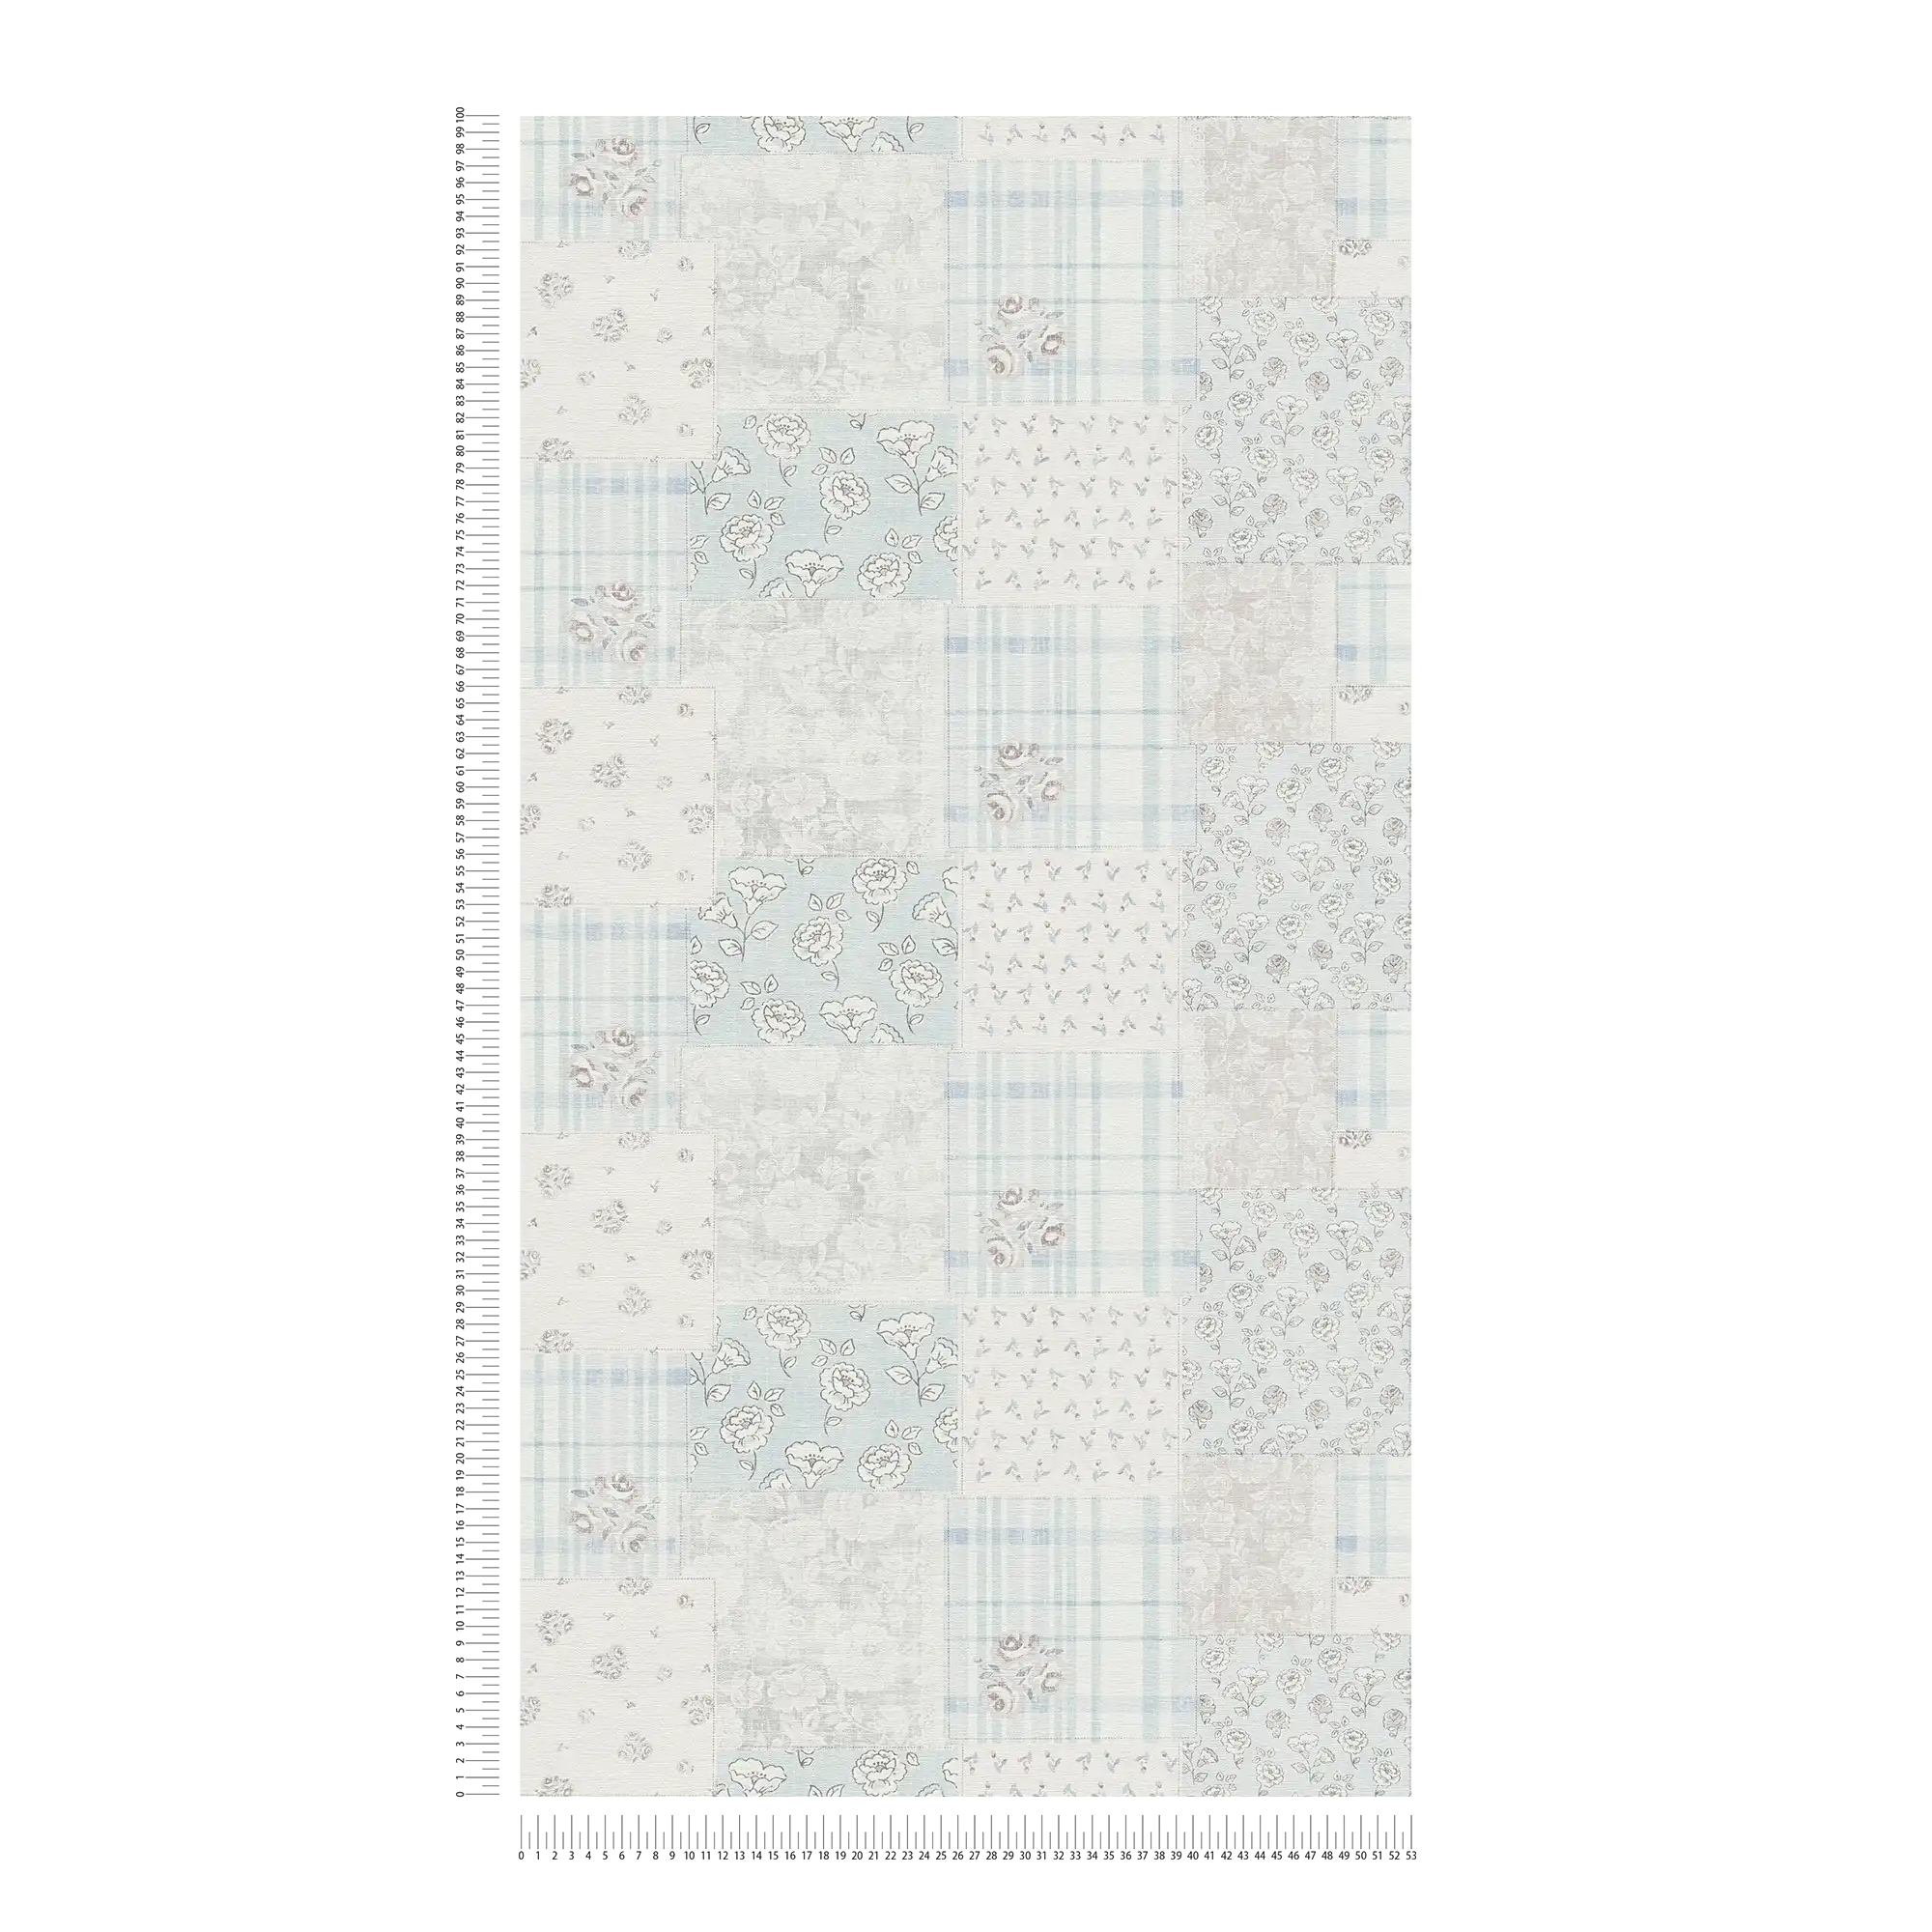             Carta da parati in tessuto non tessuto a motivi floreali e a quadri in stile country - azzurro, grigio, bianco
        